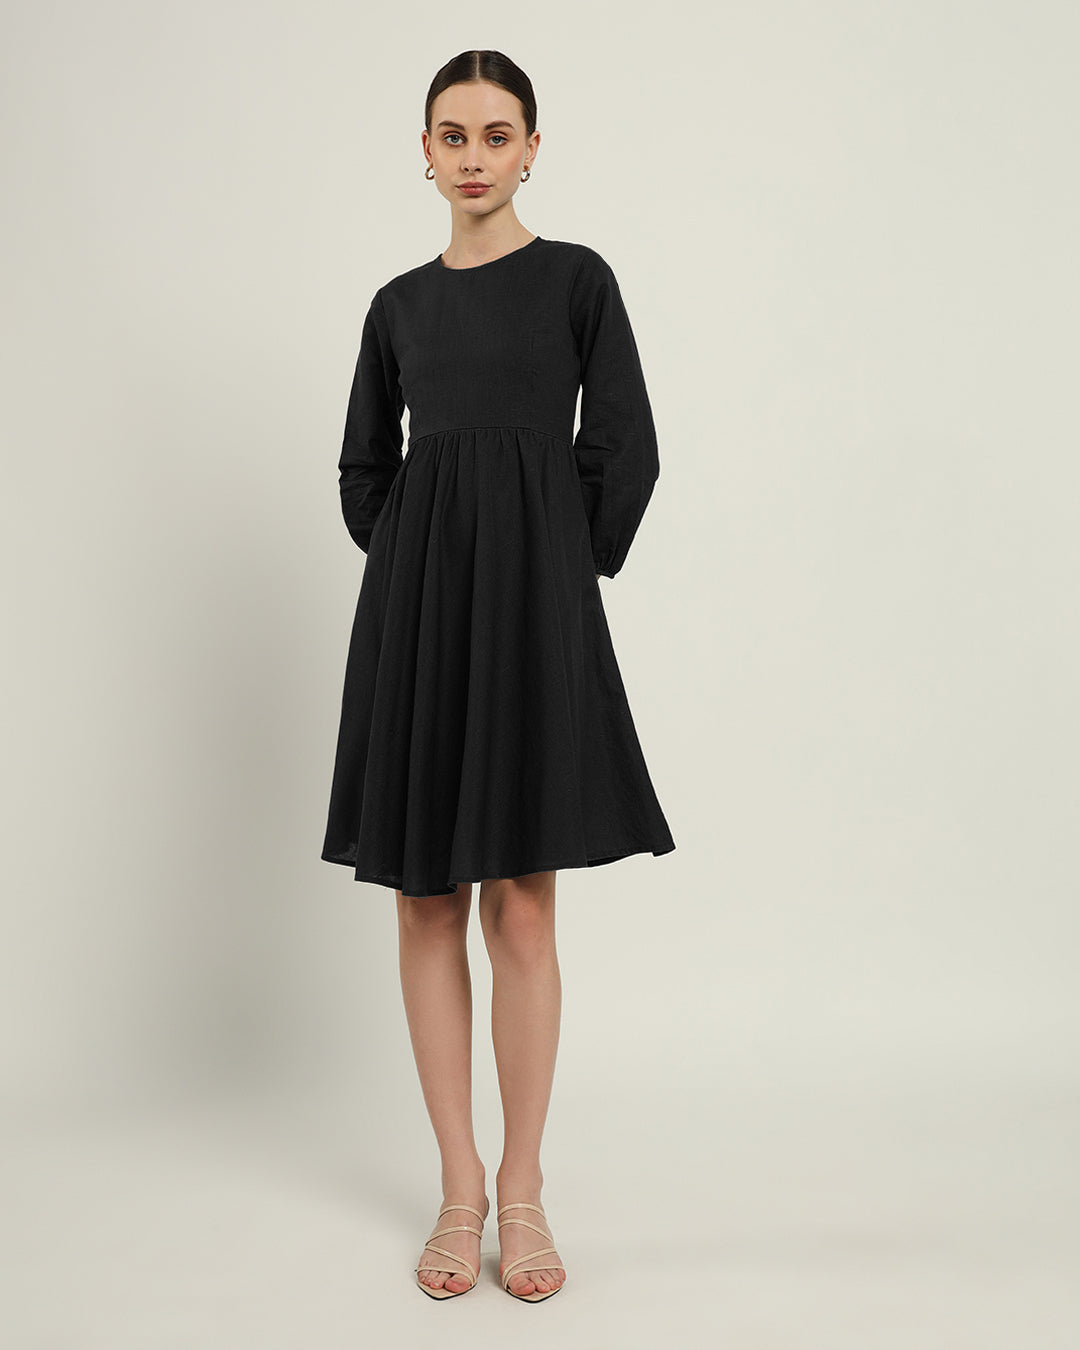 The Exeter Noir Cotton Dress